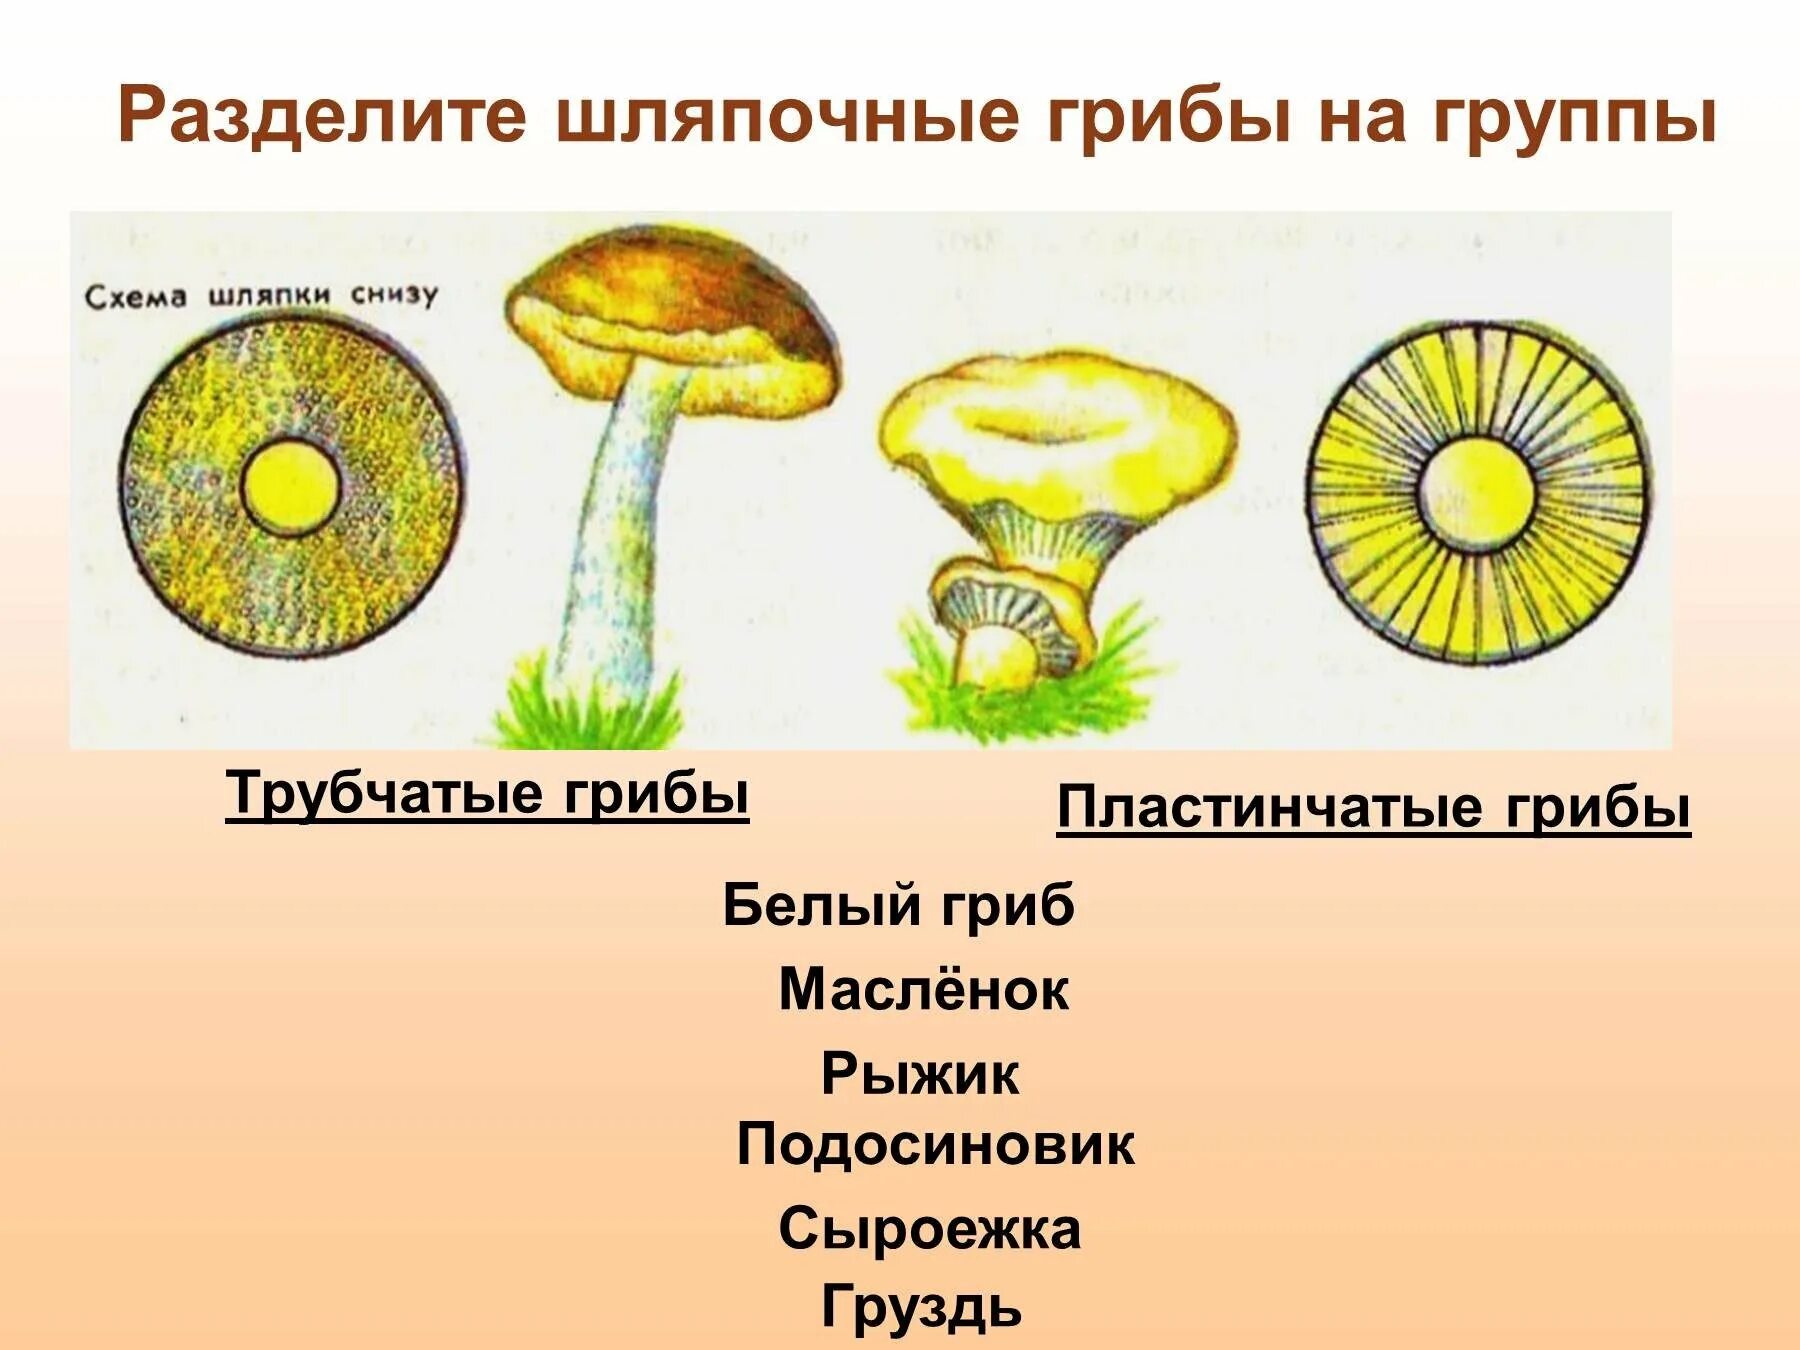 Шляпочные грибы трубчатые и пластинчатые. Трубчатые Шляпочные грибы Рыжик. Трубчатые и пластинчатые грибы 5 класс биология. Трубчатые Шляпочные грибы масленок.